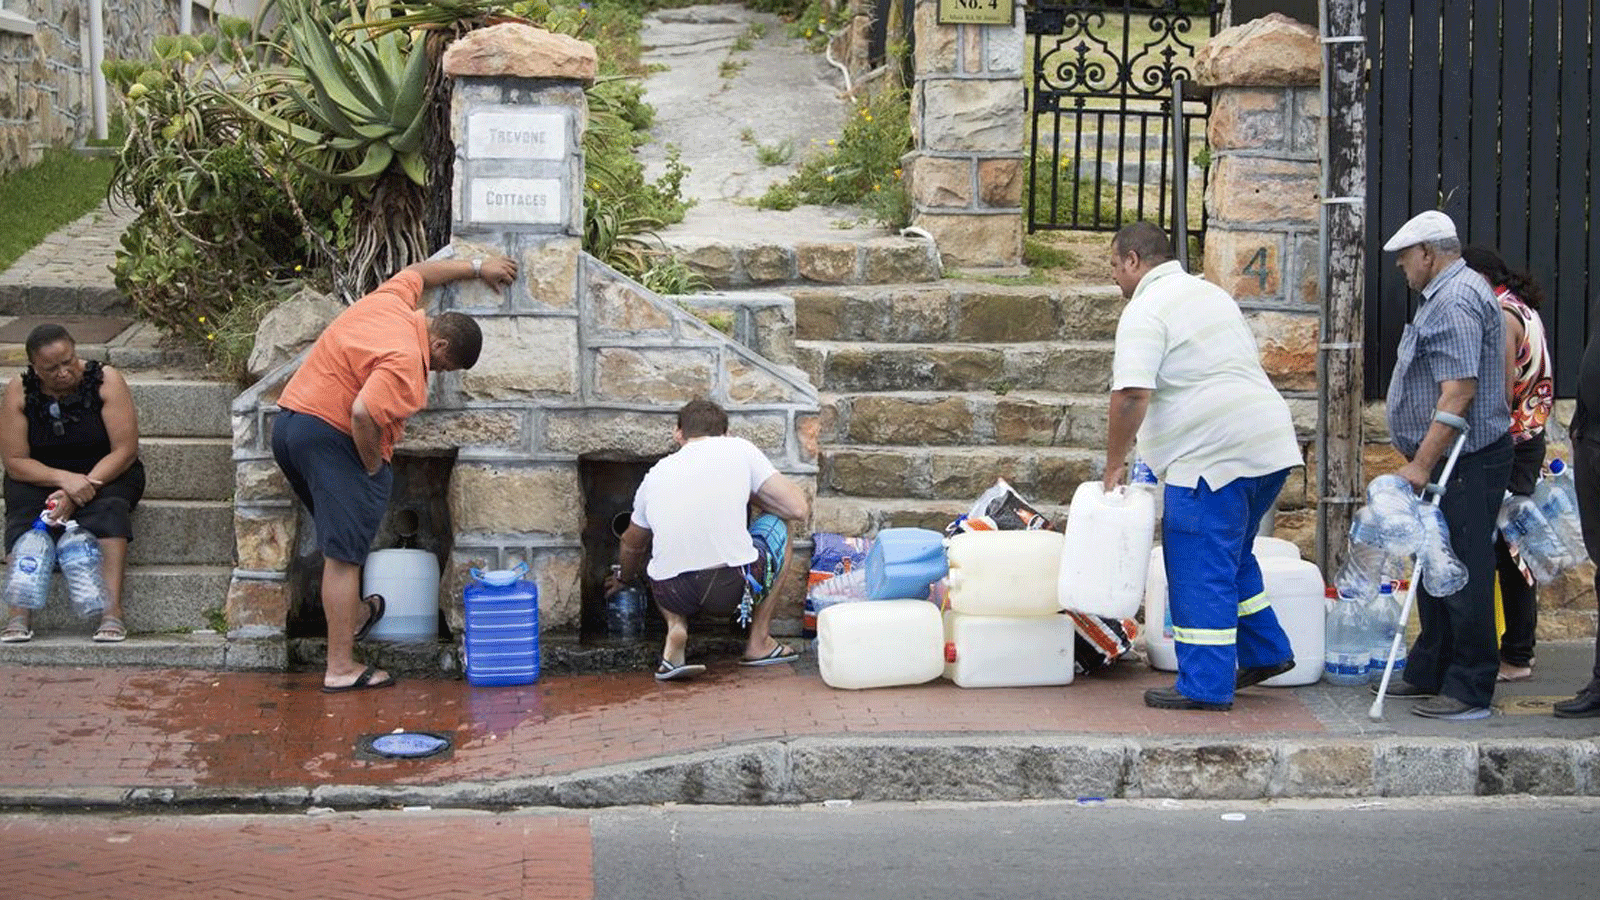  الناس يجمعون مياه الشرب من الأنابيب التي تغذيها ينابيع تحت الأرض، في سانت جيمس، على بعد حوالي 25 كيلومترًا من وسط المدينة. 19 كانون الثاني\ يناير 2018 في في كيب تاون